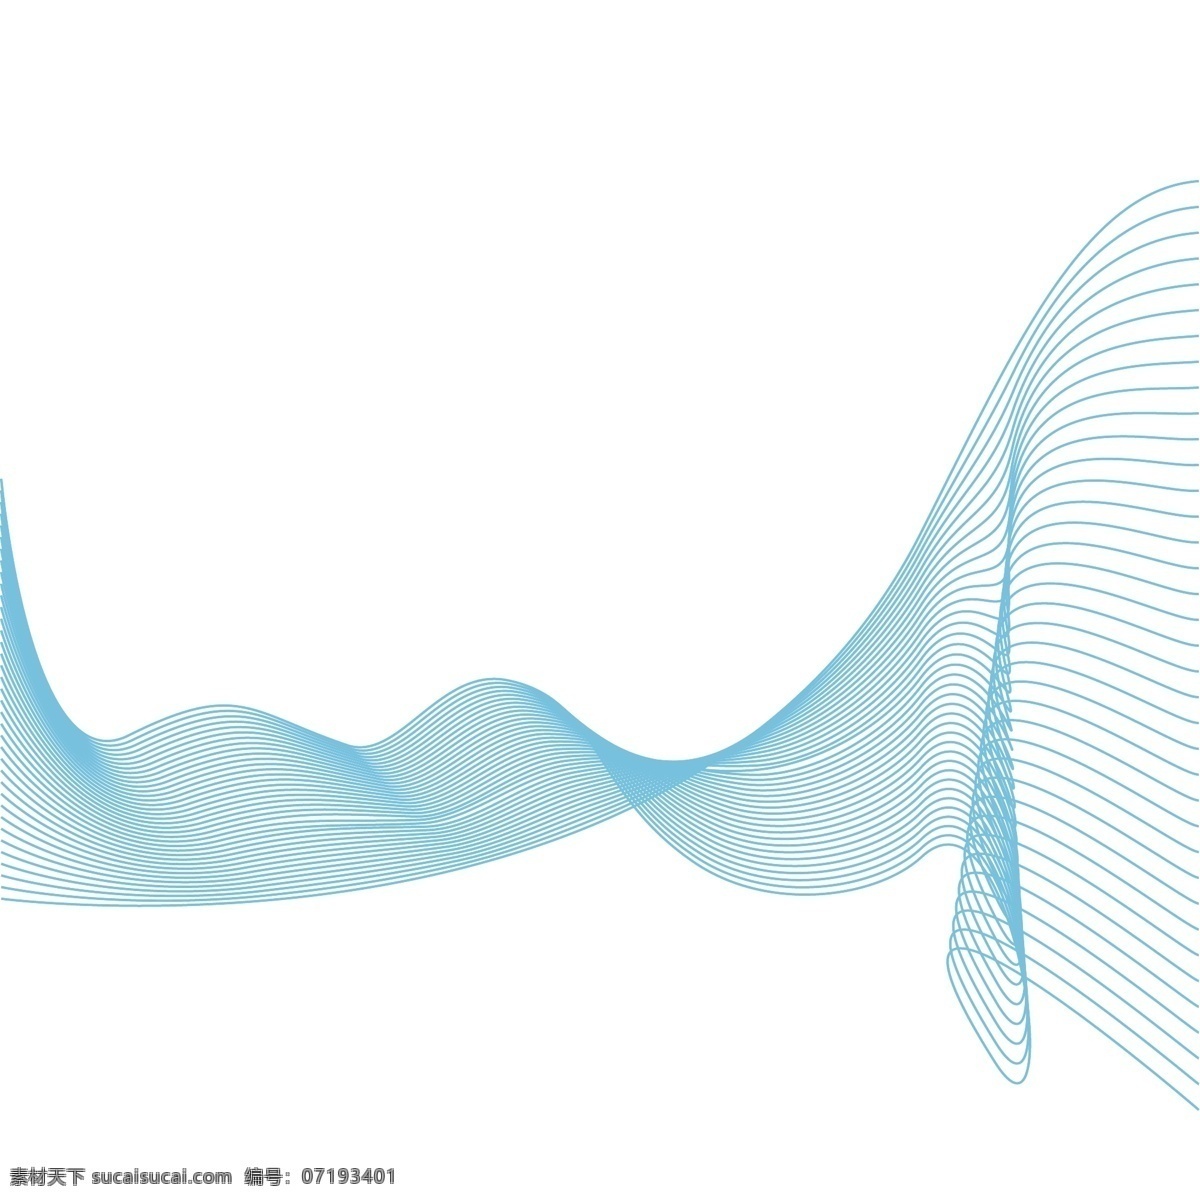 流线型 波浪 线条 蓝色 波涛 科技感